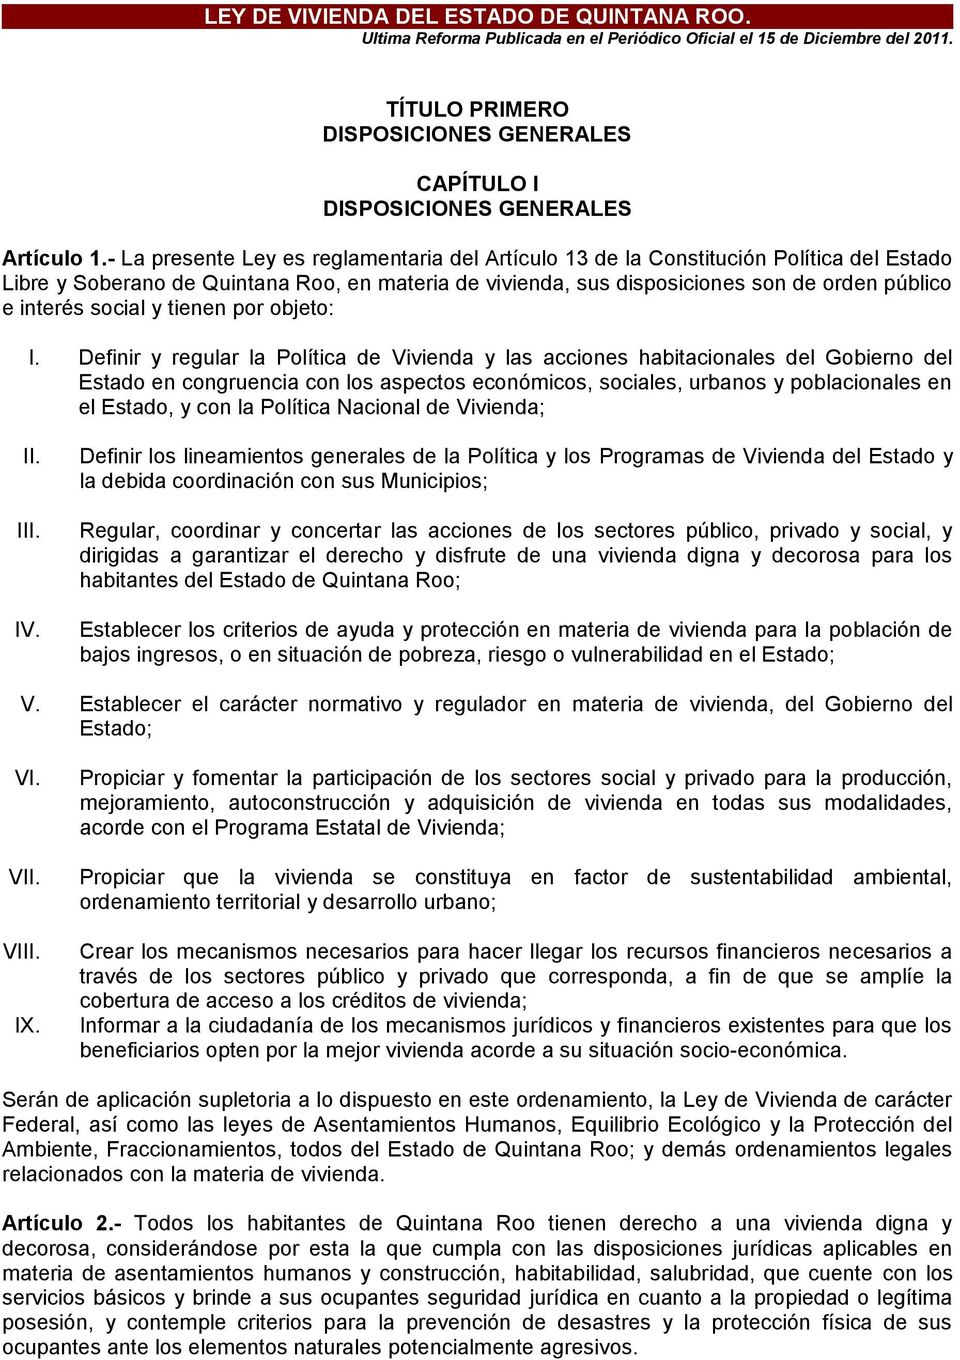 - La presente Ley es reglamentaria del Artículo 13 de la Constitución Política del Estado Libre y Soberano de Quintana Roo, en materia de vivienda, sus disposiciones son de orden público e interés